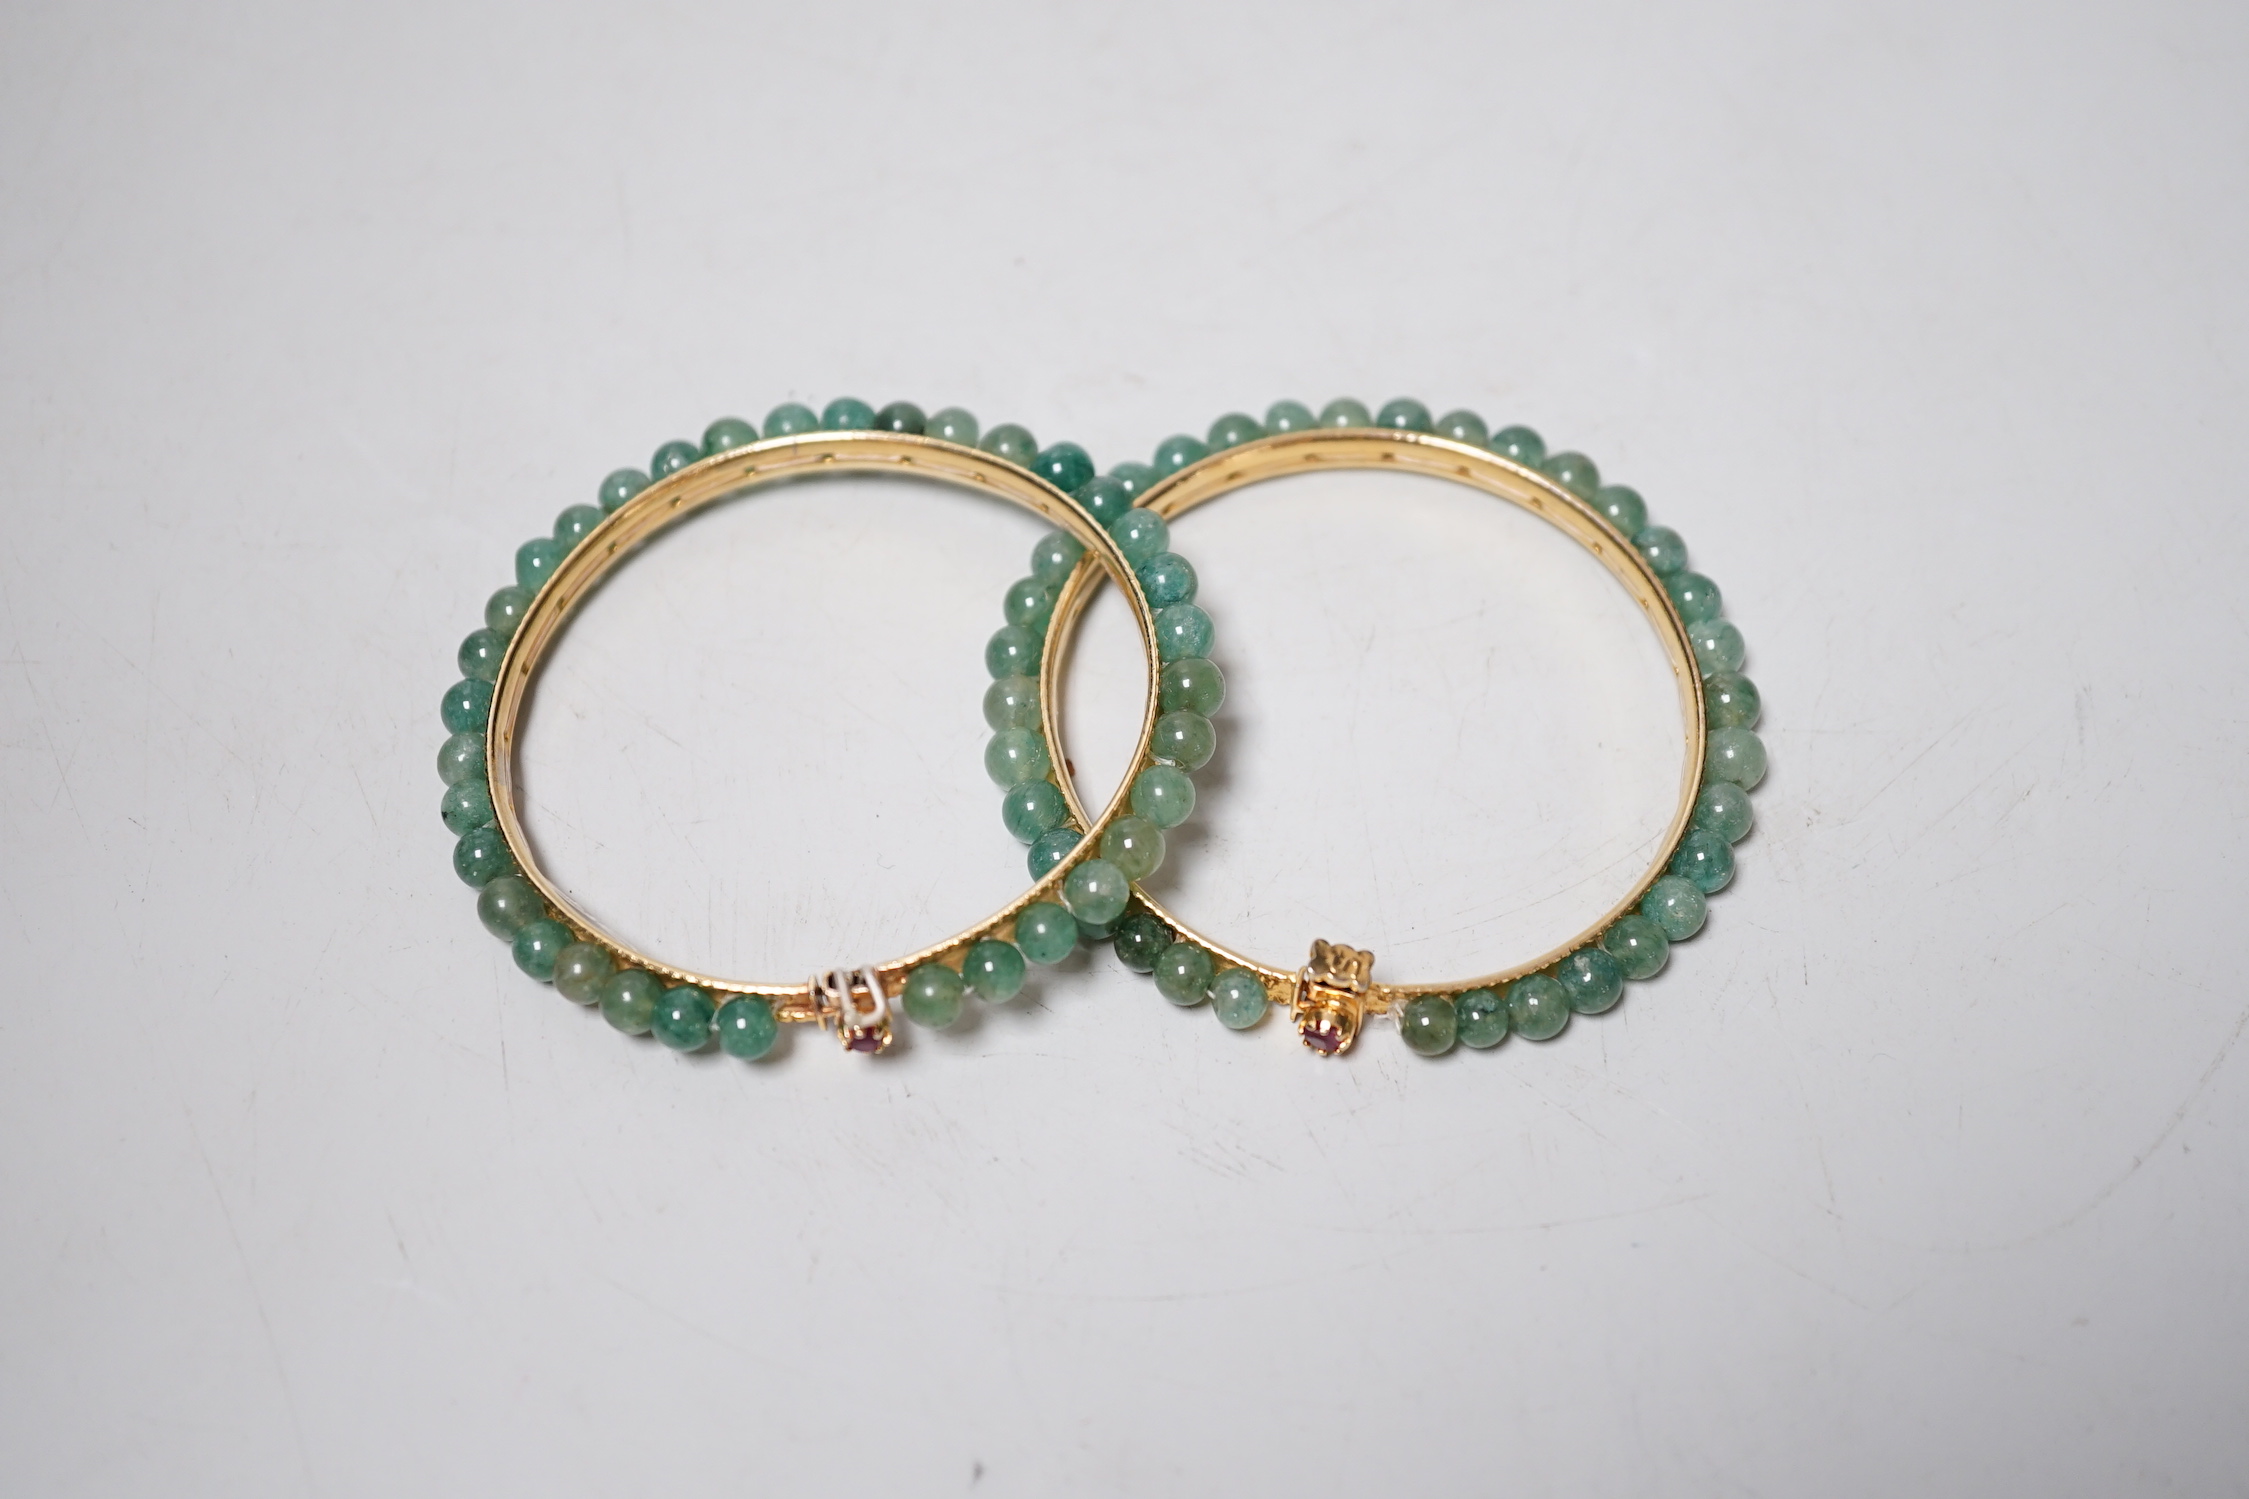 A pair of yellow metal and jade bangles, 7.2cm diameter